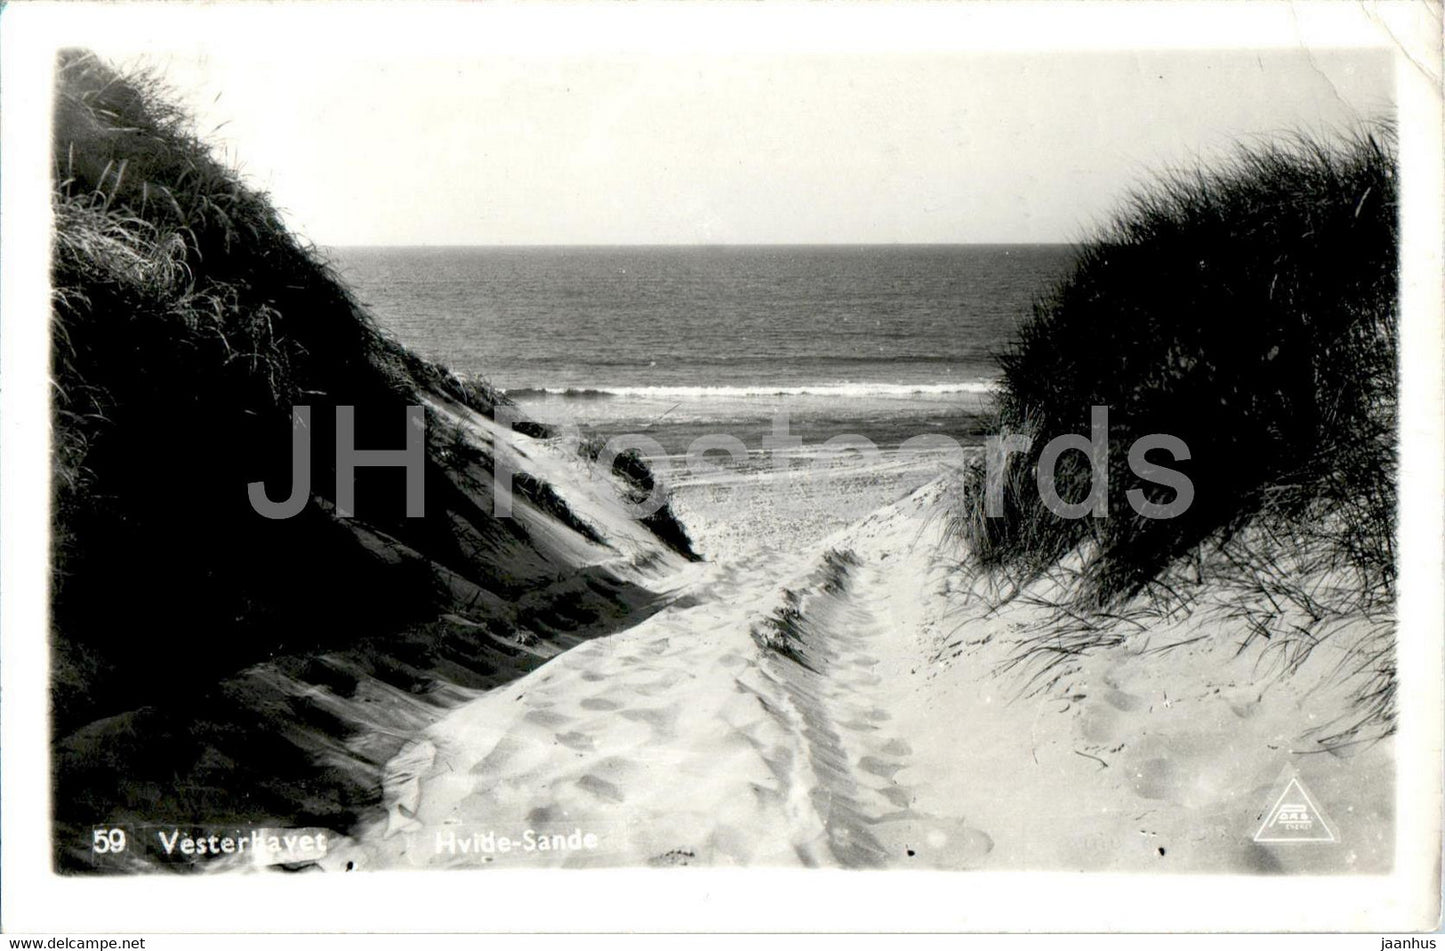 Vesterhavet - Hvide Sande - North Sea - 59 - Denmark - used - JH Postcards